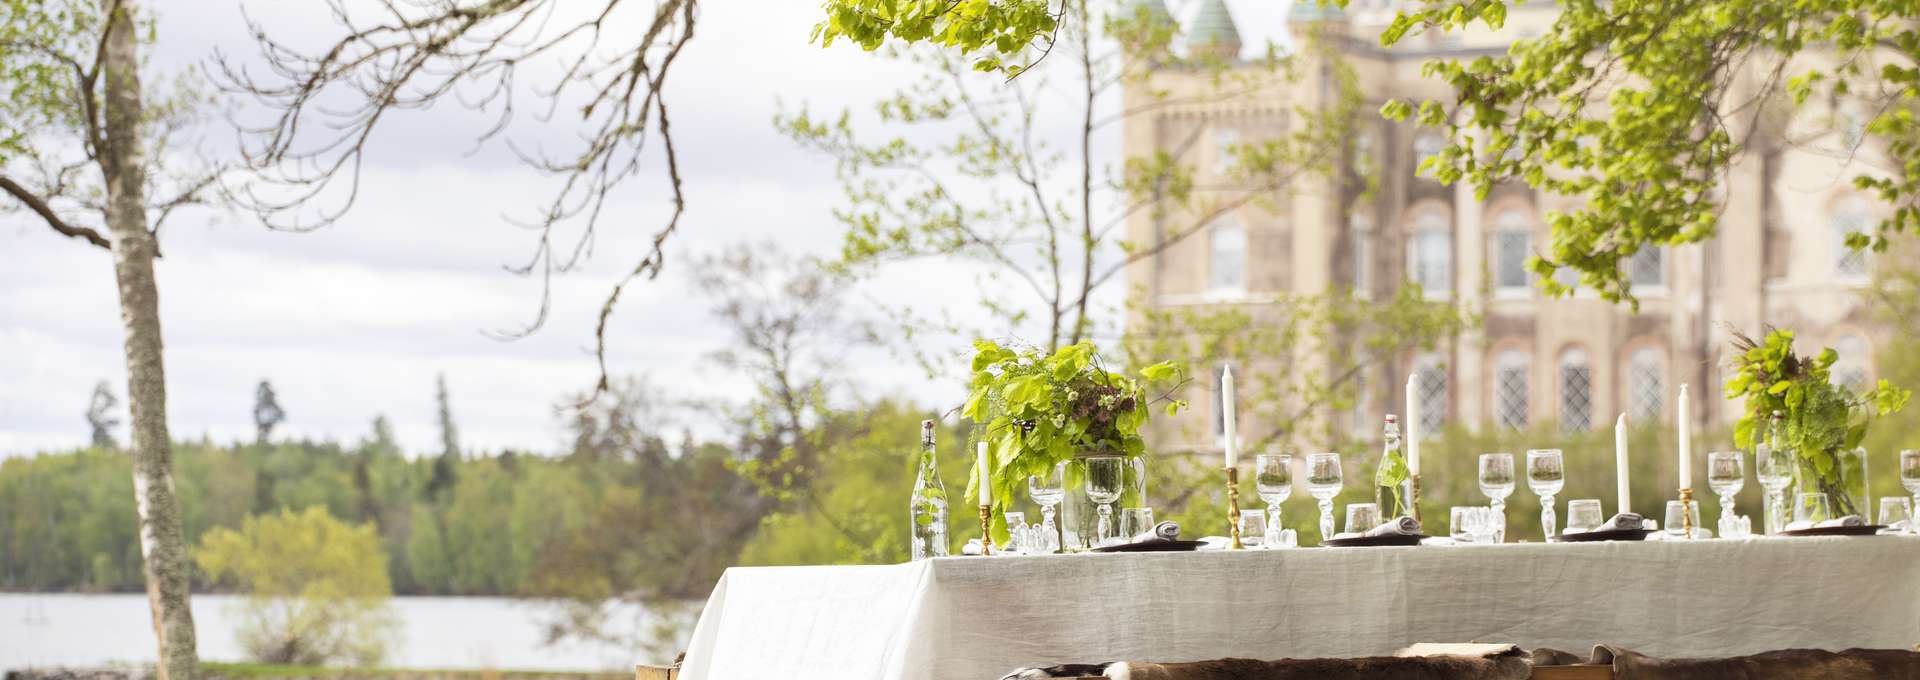 Dukat bord i förgrunden och Stora Sundby slott i bakgrunden